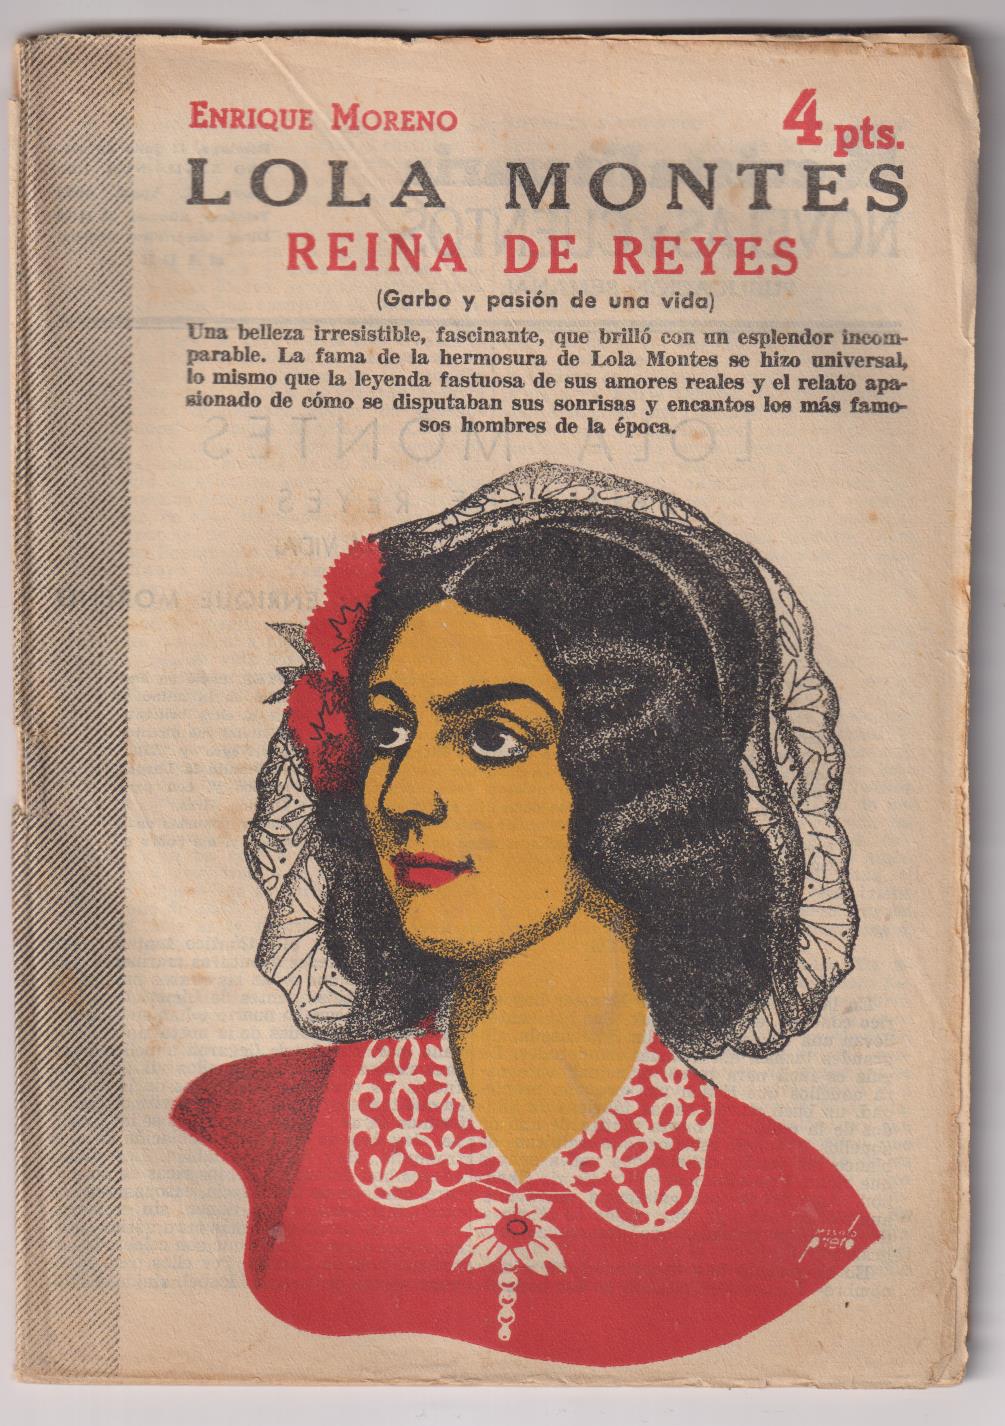 Revista Literaria Novelas y Cuentos nº 1262. Lola Montes, Reina de Reyes. E. Moreno, Año 1955